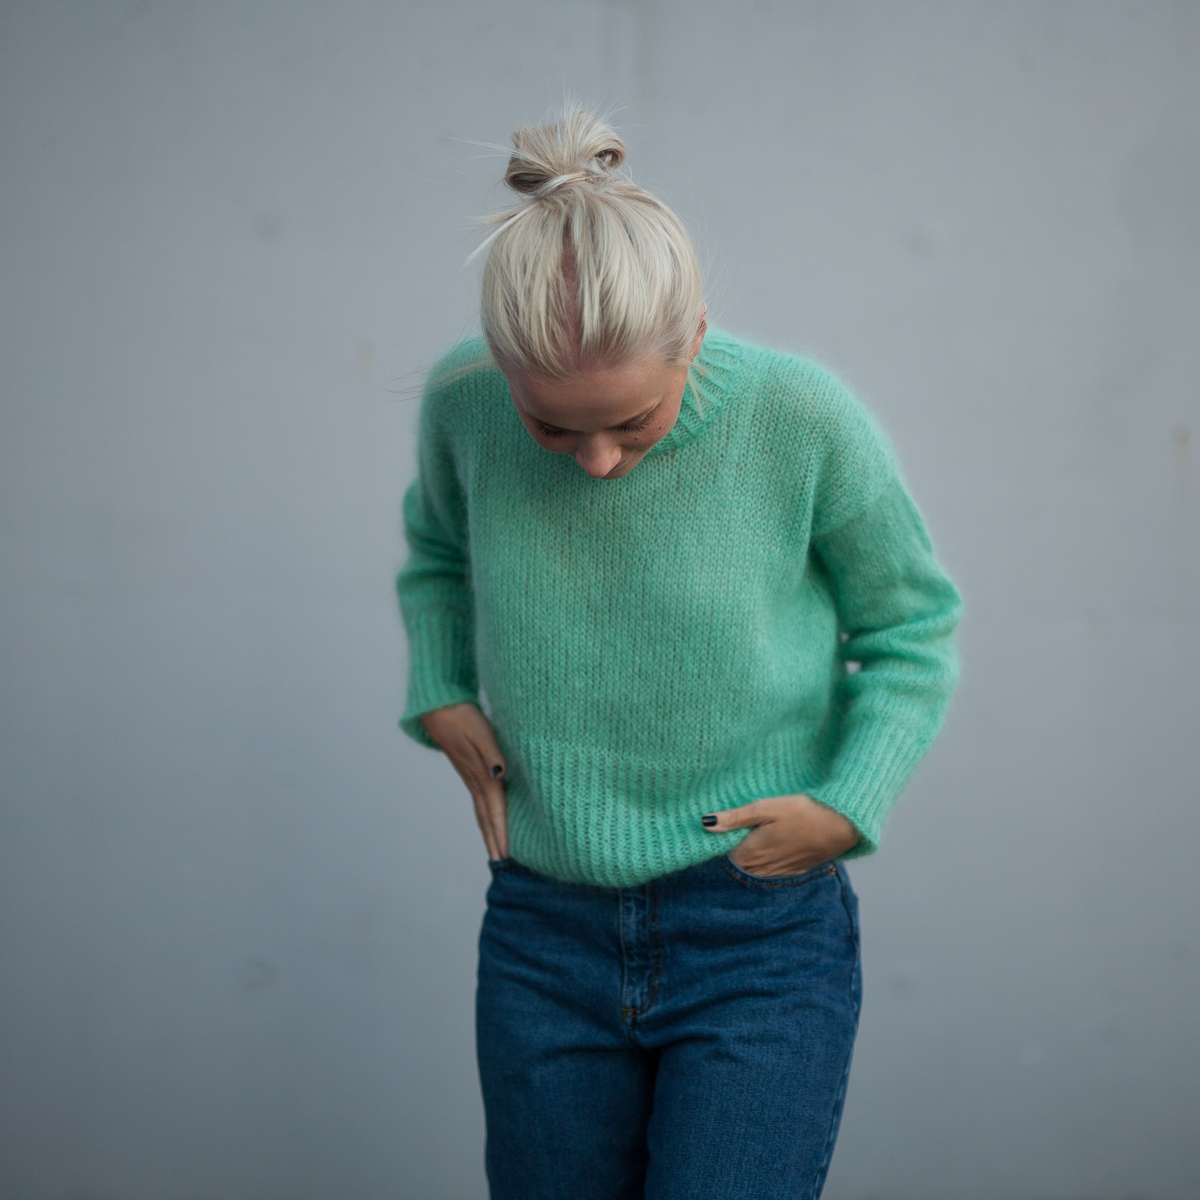 mohair yarn sorbet - Elvira Sweater | Turtleneck sweater women knitting kit - by HipKnitShop - 03/09/2018